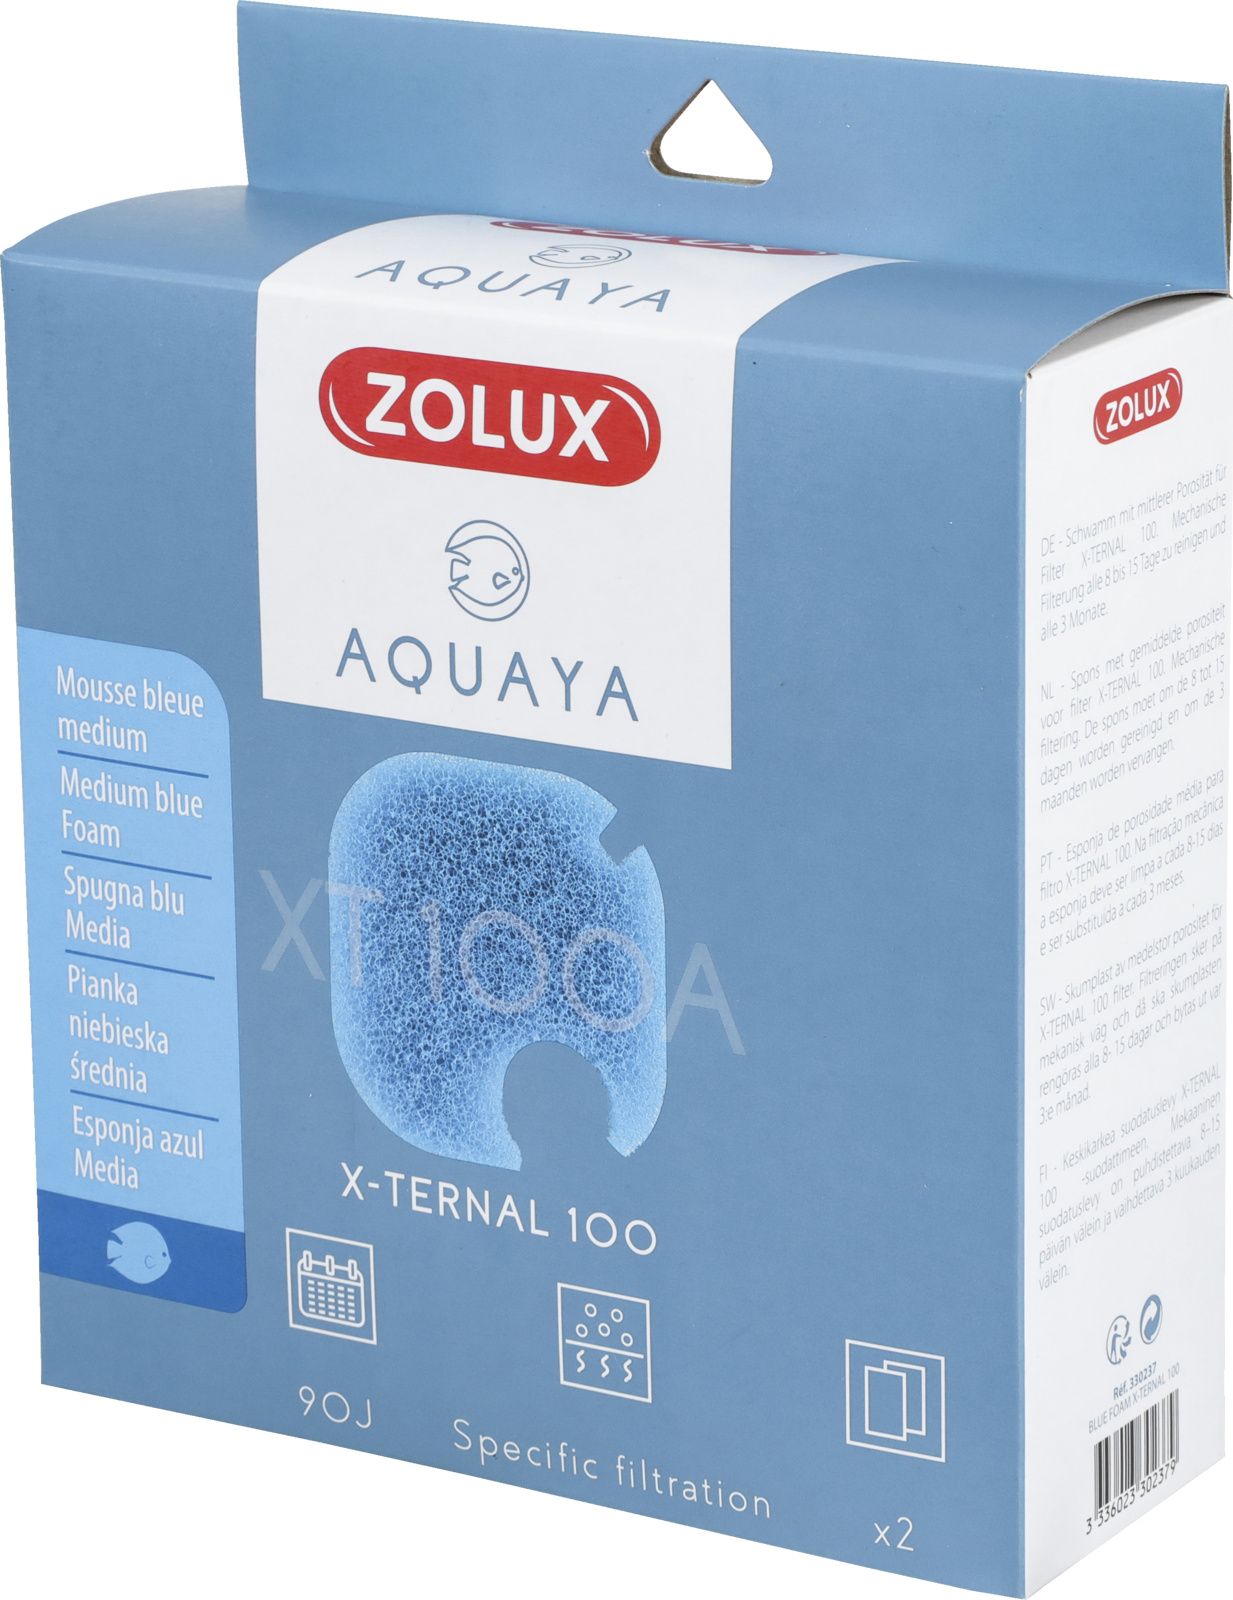 Zolux AQUAYA Wklad gabka Blue Foam Xternal 100 7544711 (3336023302379) akvārija filtrs